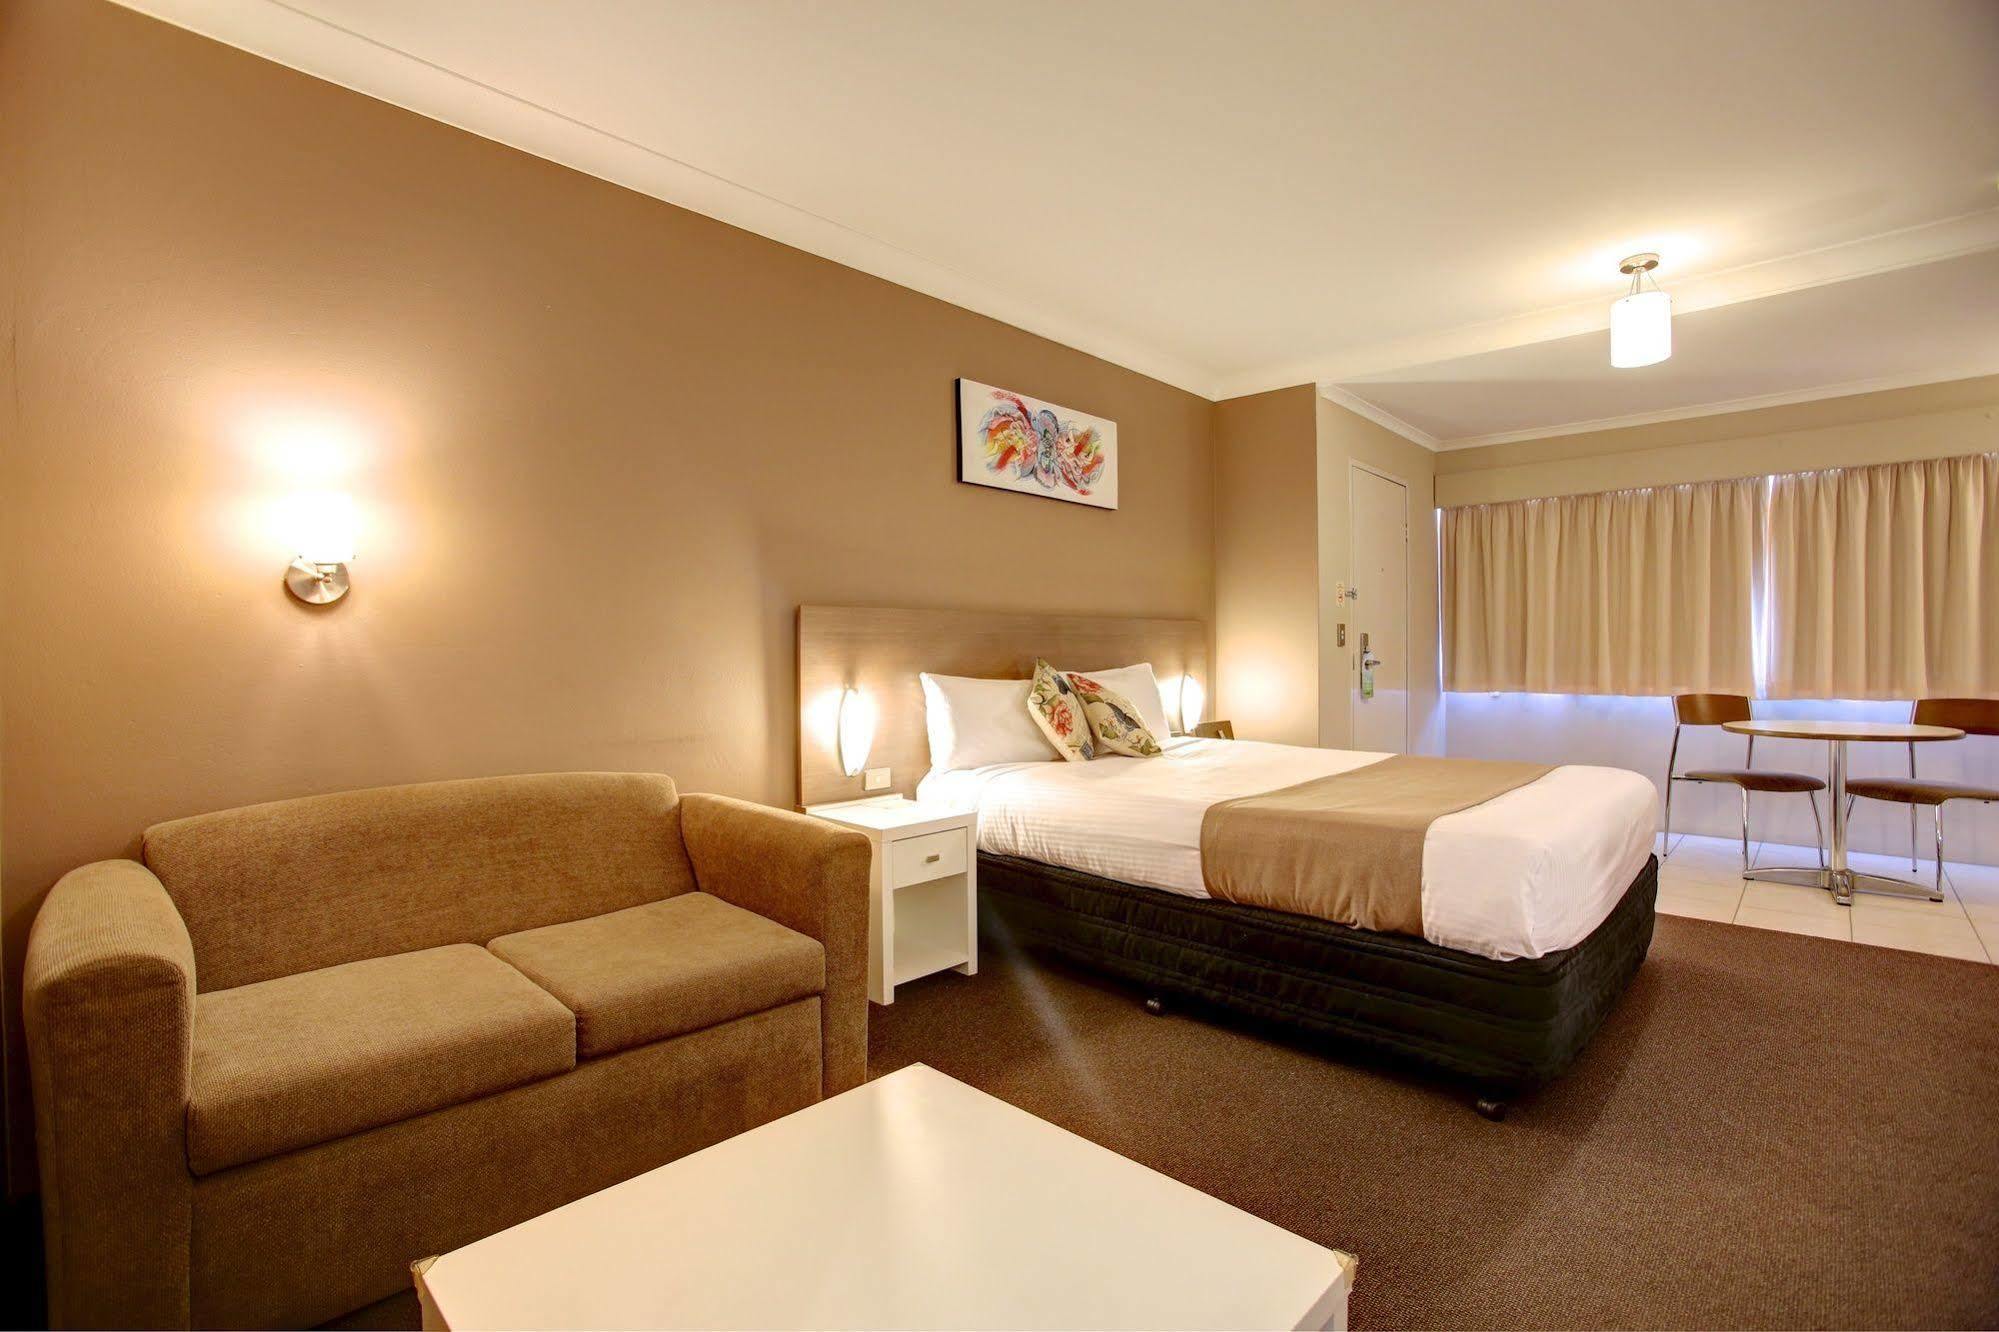 Quality Hotel City Centre Coffs Harbour Kültér fotó